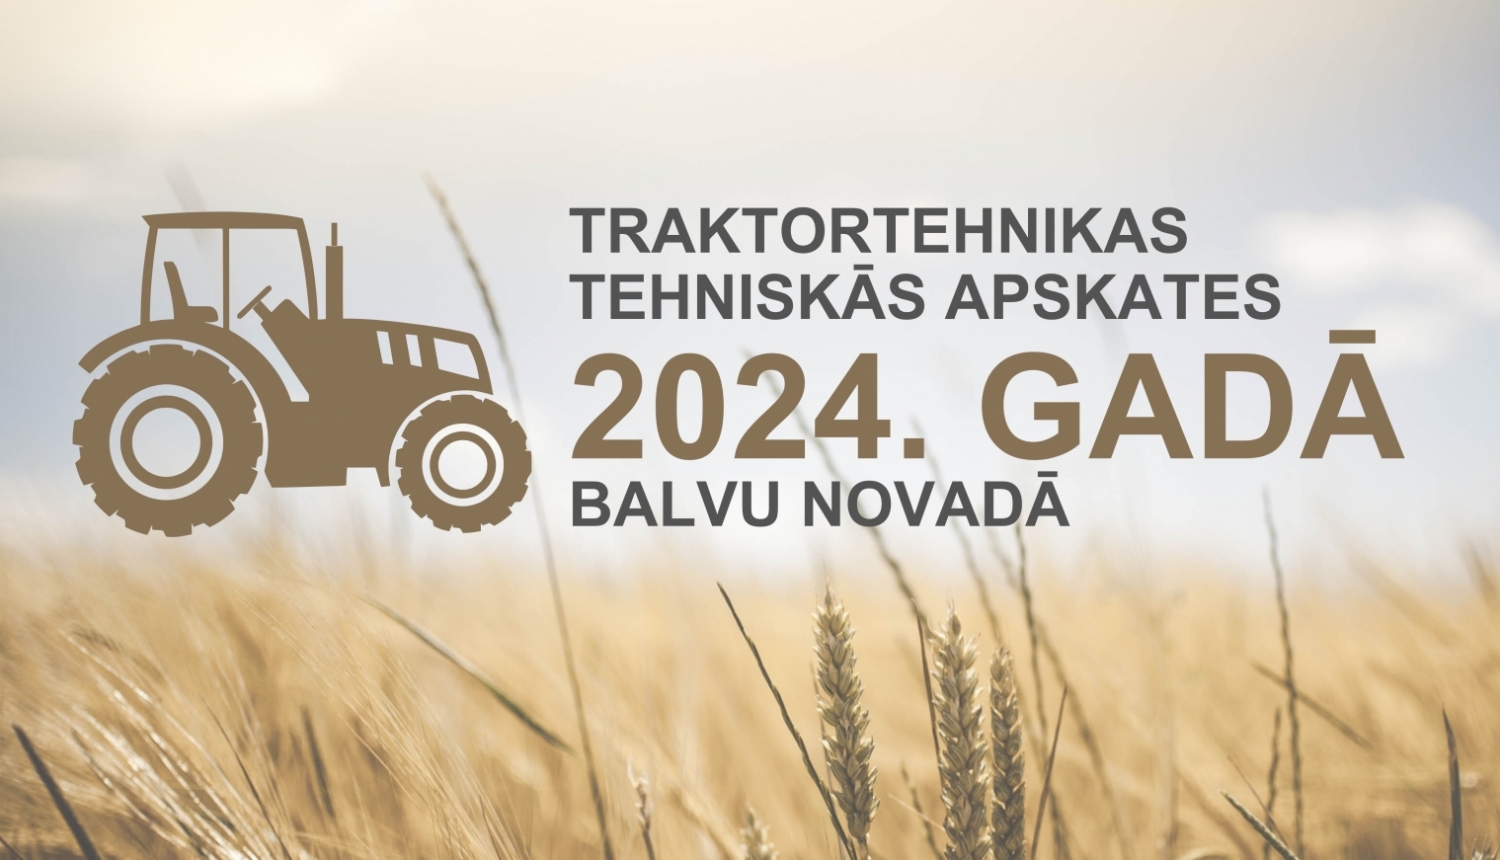 Traktortehnikas tehniskās apskates 2024. gadā Balvu novadā